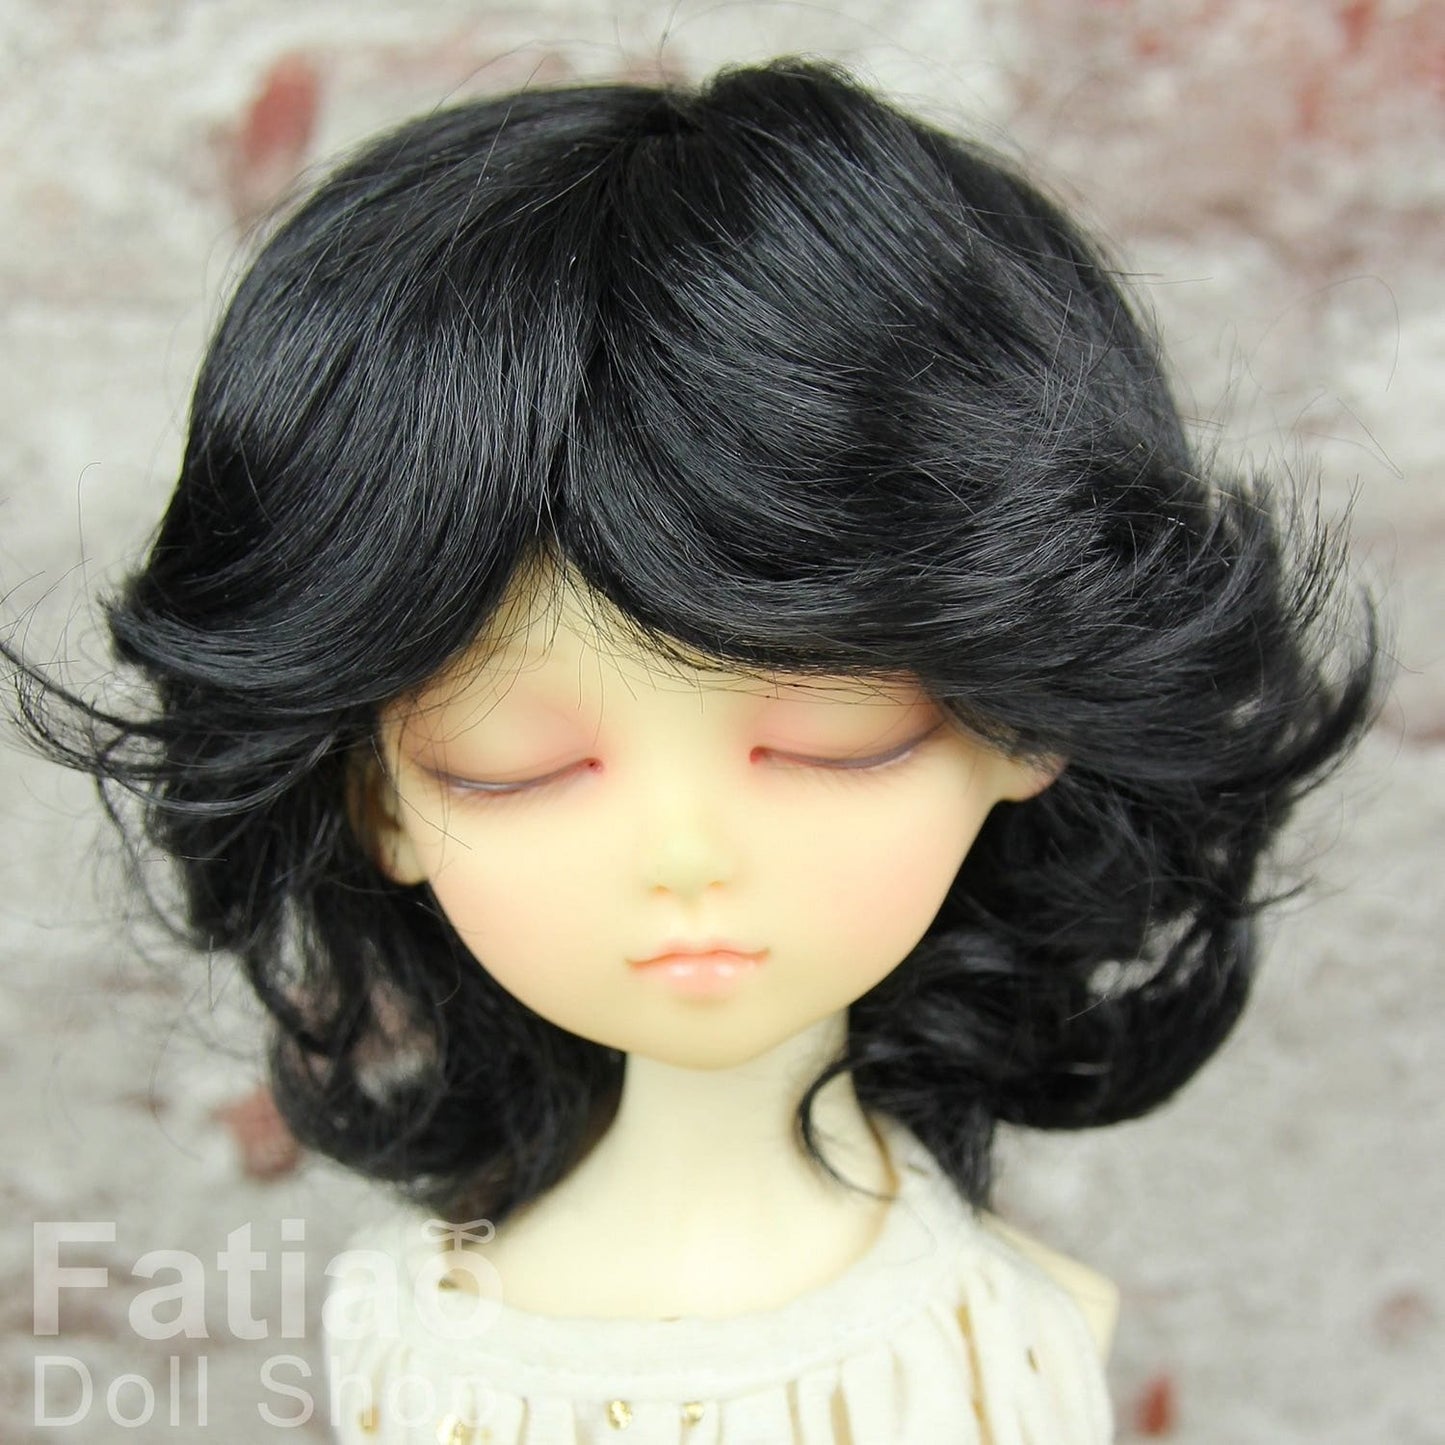 【Fatiao Doll Shop】FWF- 娃用假髮 多色 BJD iMda